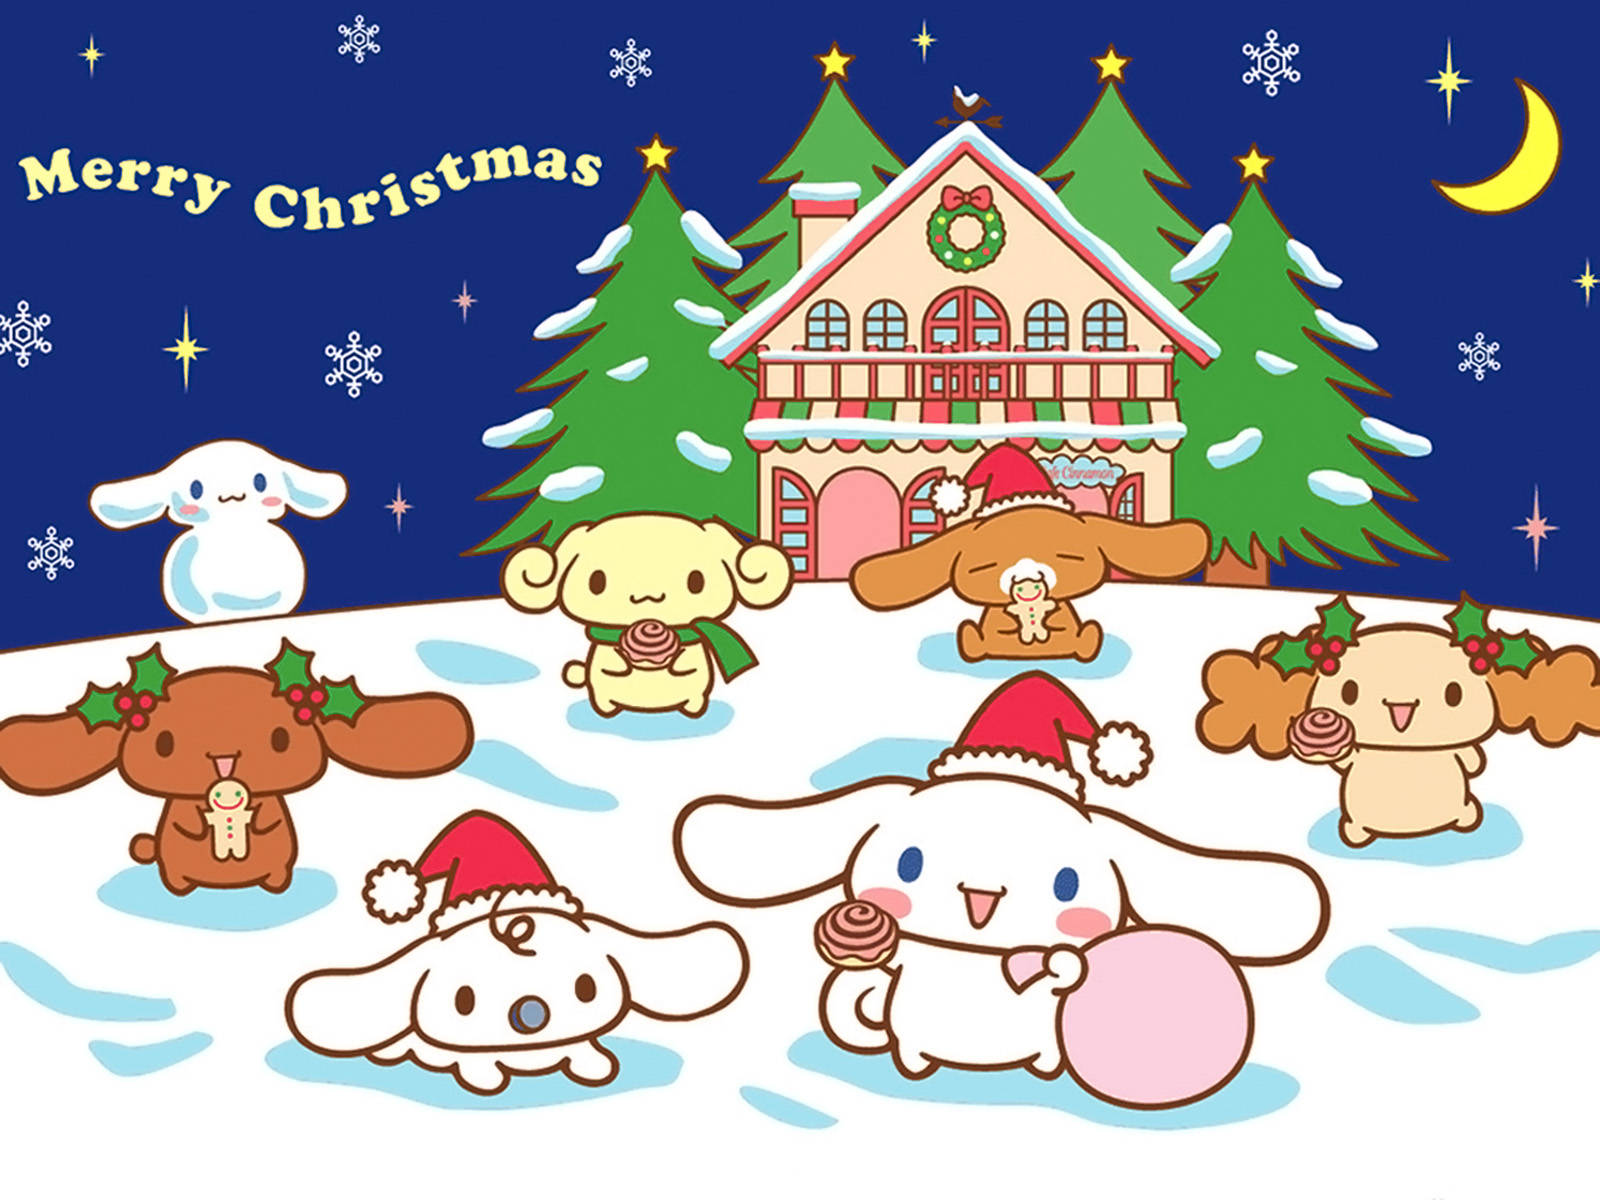 Sanrio là thương hiệu đồ chơi, đồ dùng phổ biến nhất tại Nhật Bản, và họ đã mang đến cho người hâm mộ của mình những hình nền Hello Kitty tuyệt đẹp trong mùa lễ hội Noel. Hãy xem hình ảnh để thấy sự khéo léo và tinh tế của các nhà thiết kế.